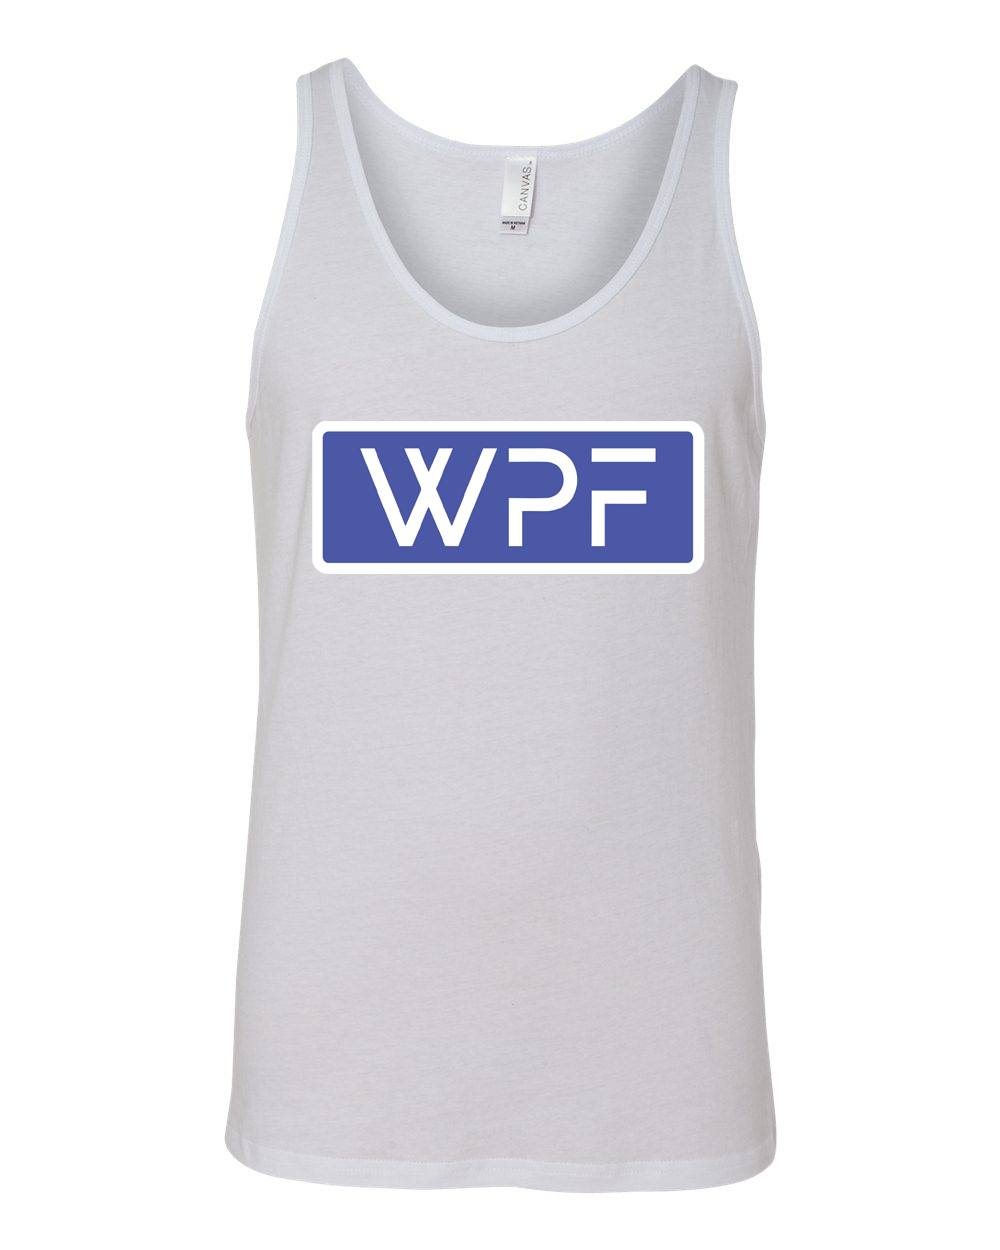 WPF Tank Top - White